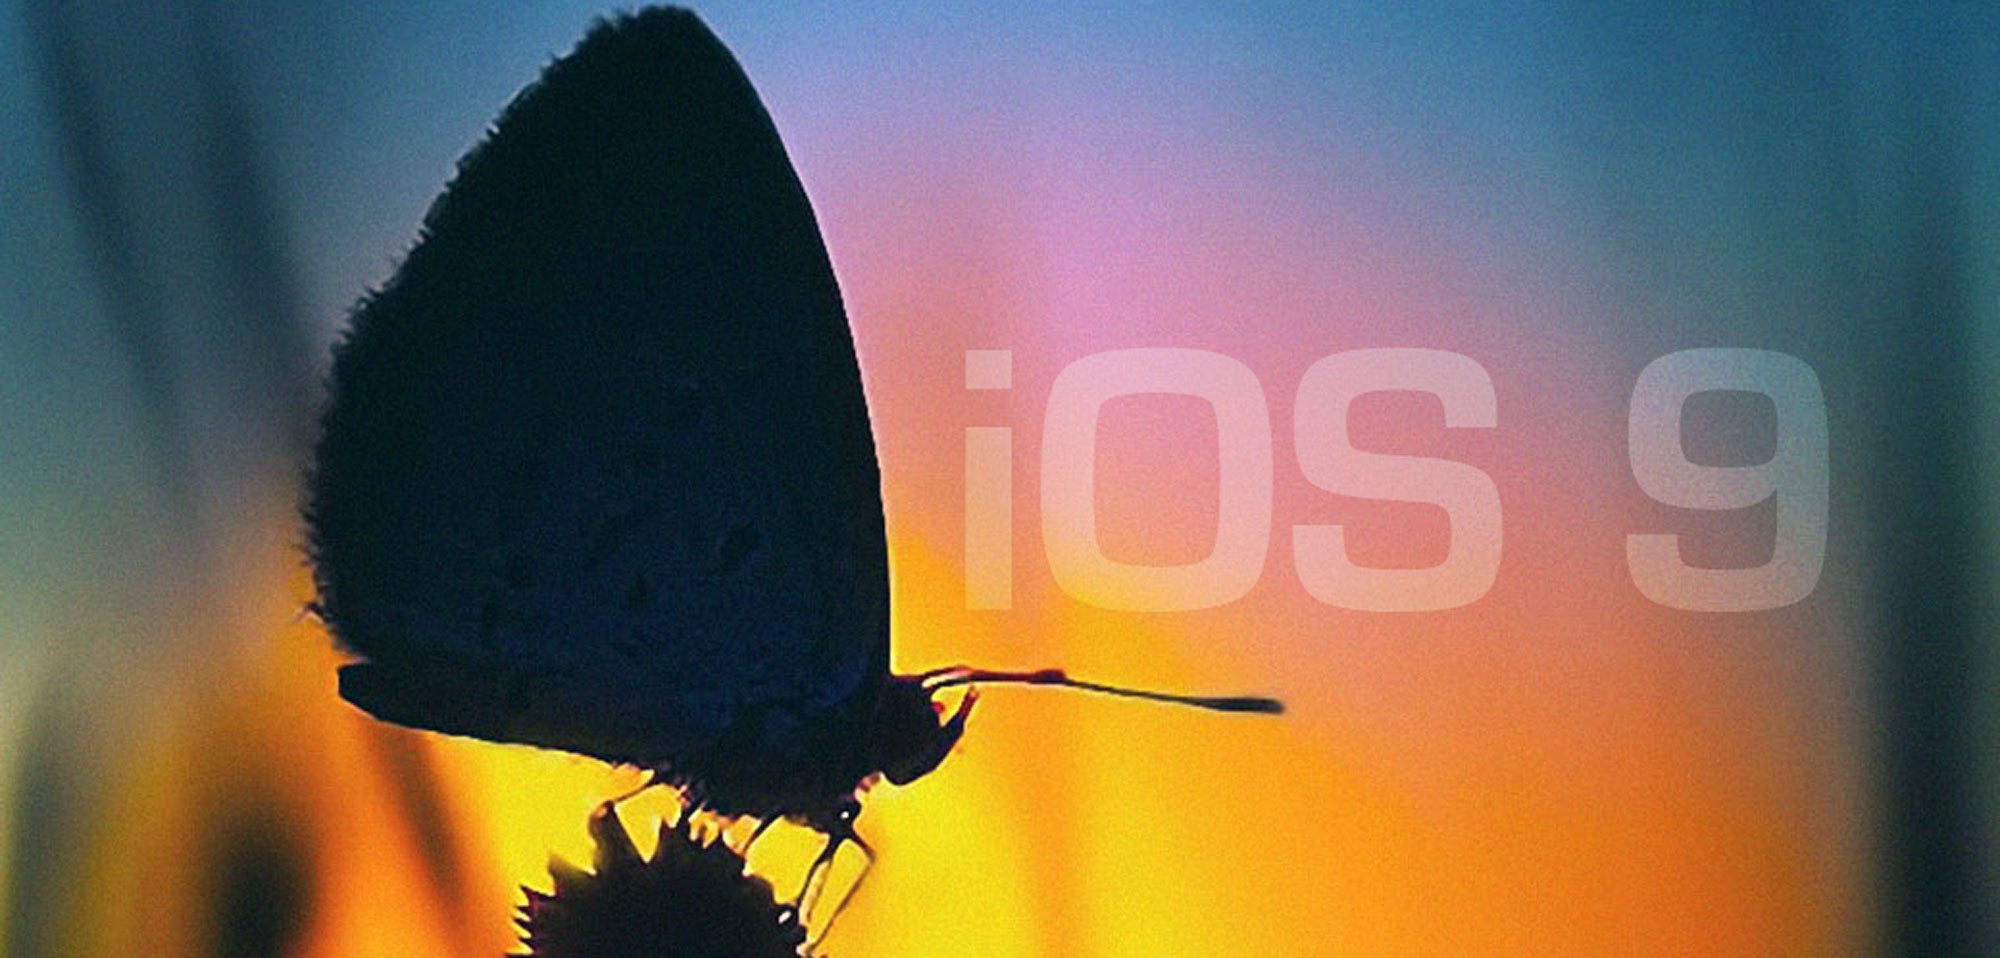 iOS 8.3 im Test, iOS 8.4 in Arbeit, iOS 9 noch besser & stabiler 3